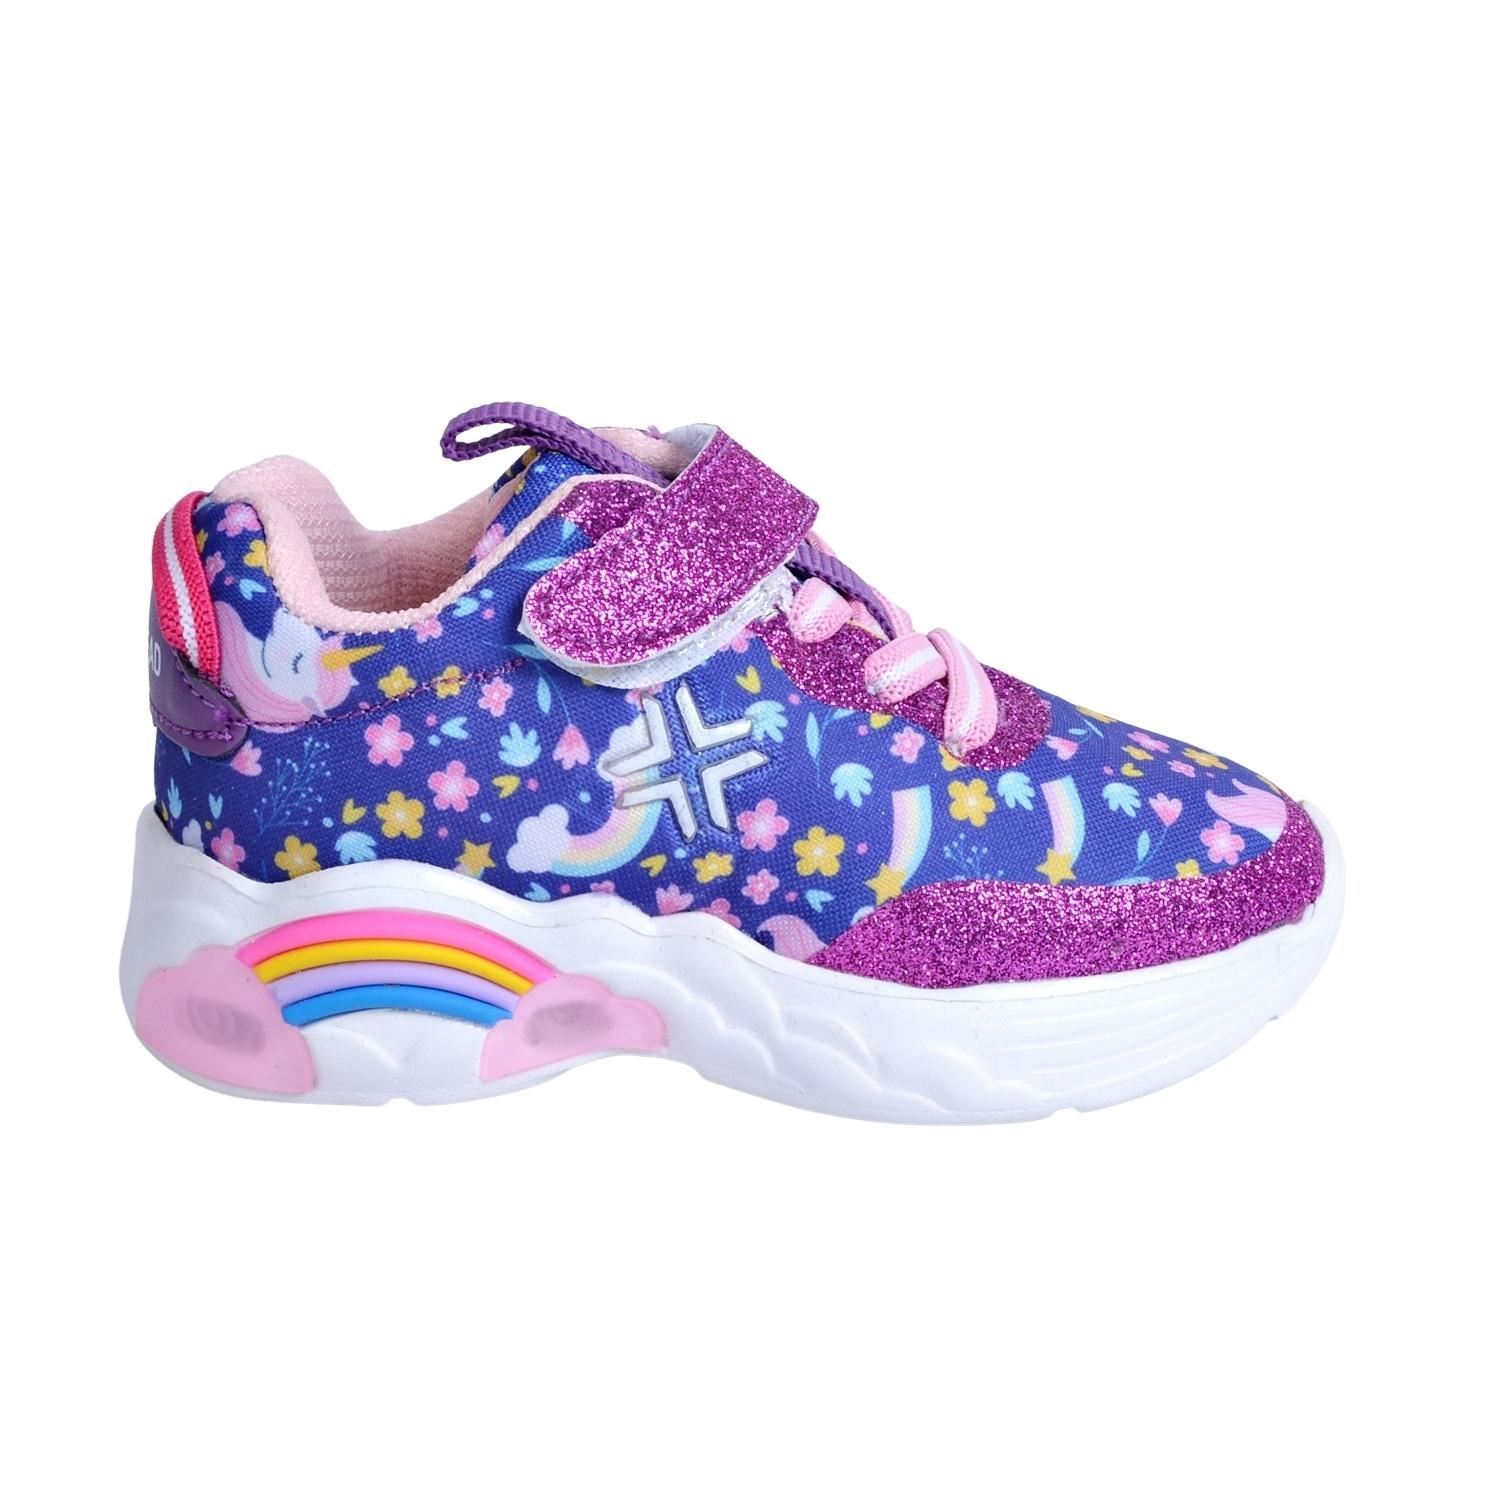 Buckhead 4122 Rainbow Işıklı Mor Çocuk Spor Ayakkabı